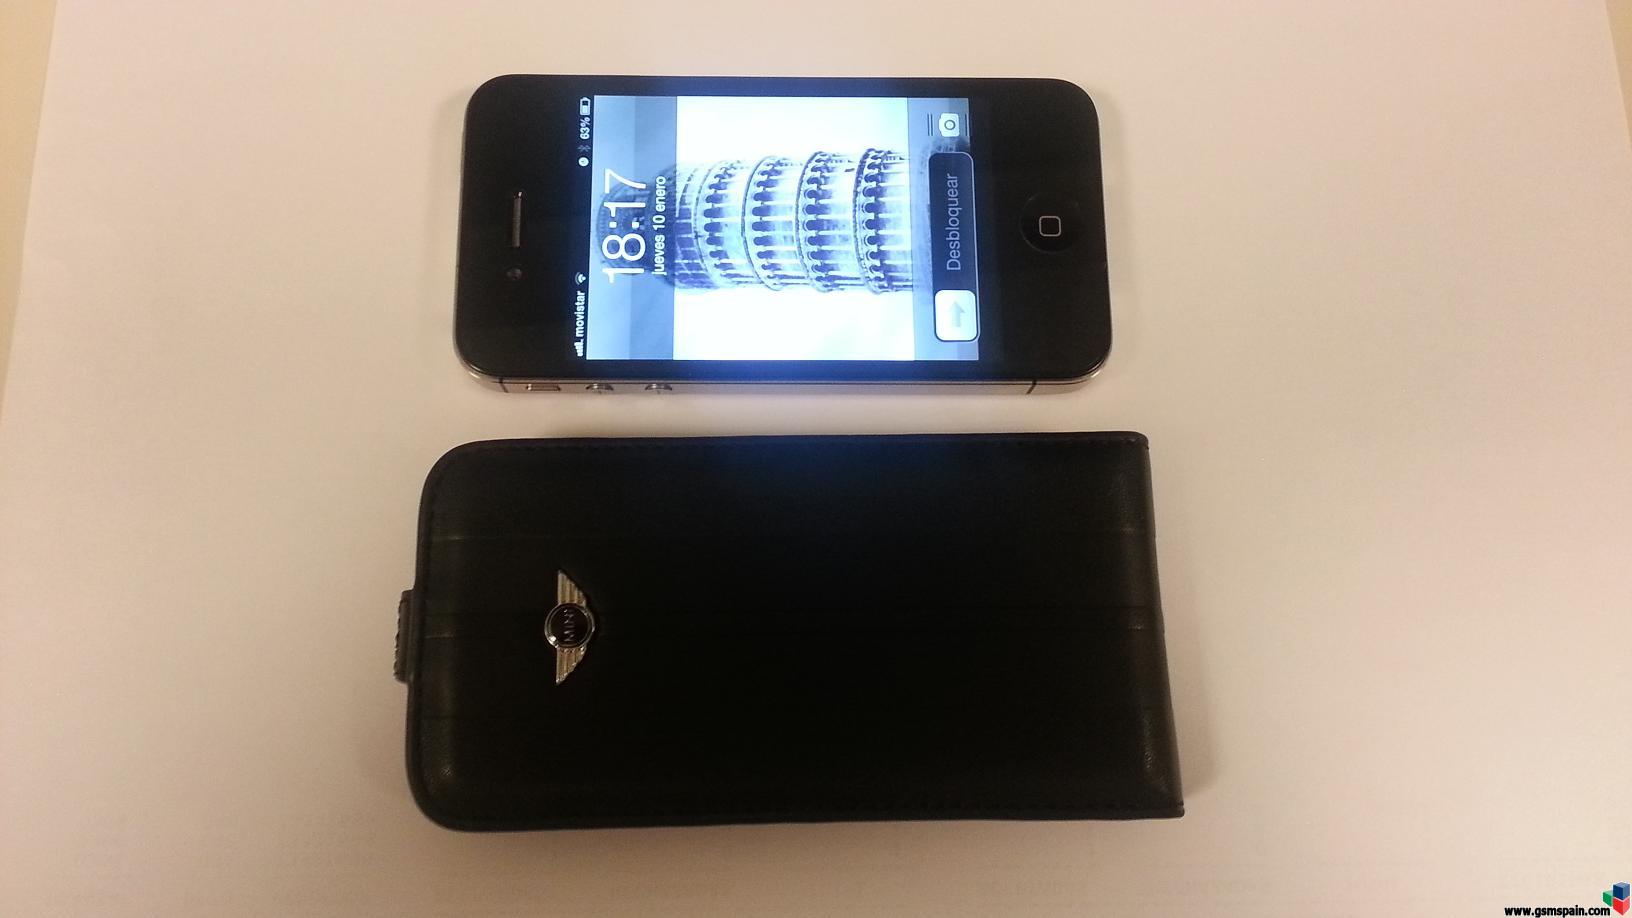 [CAMBIO] Iphone 4S Negro Movistar + Galaxy Tab 2 de 7" nueva